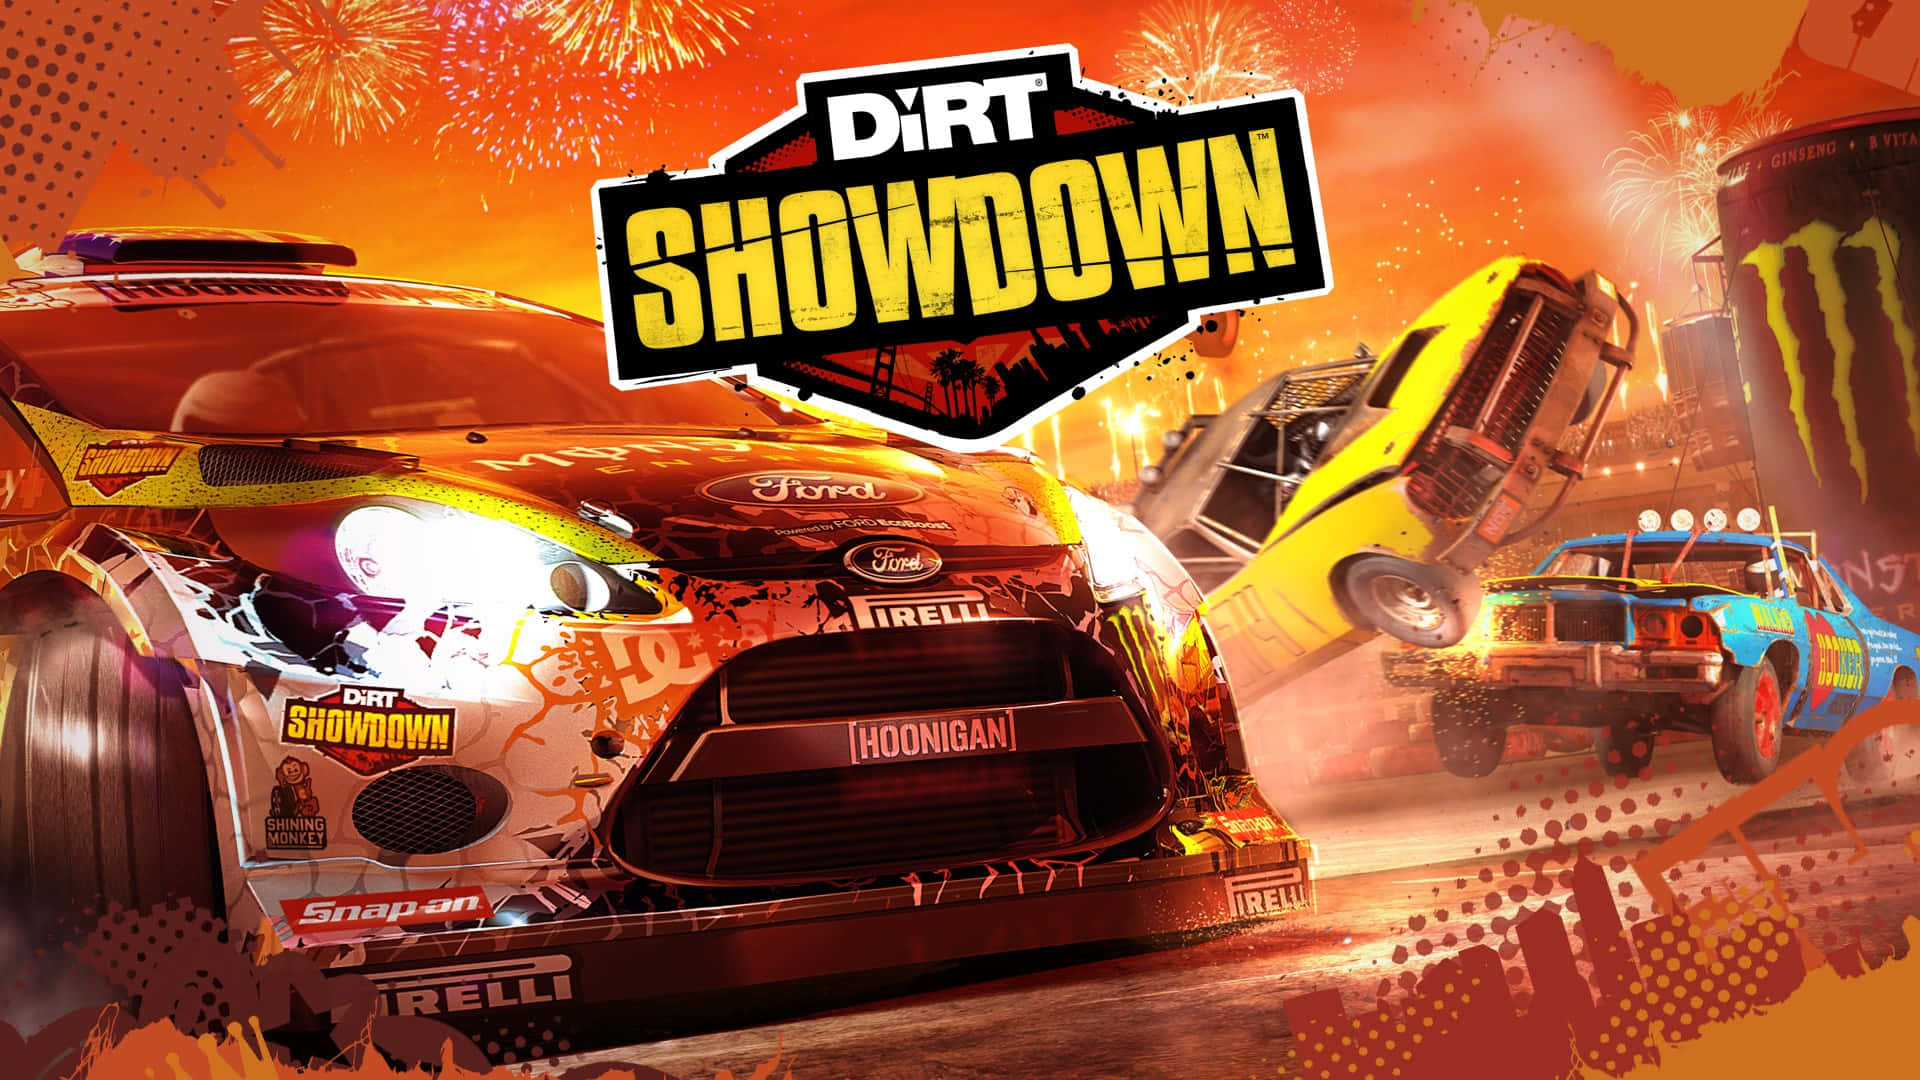 Klar til spændende raceraction i HD Dirt Showdown!